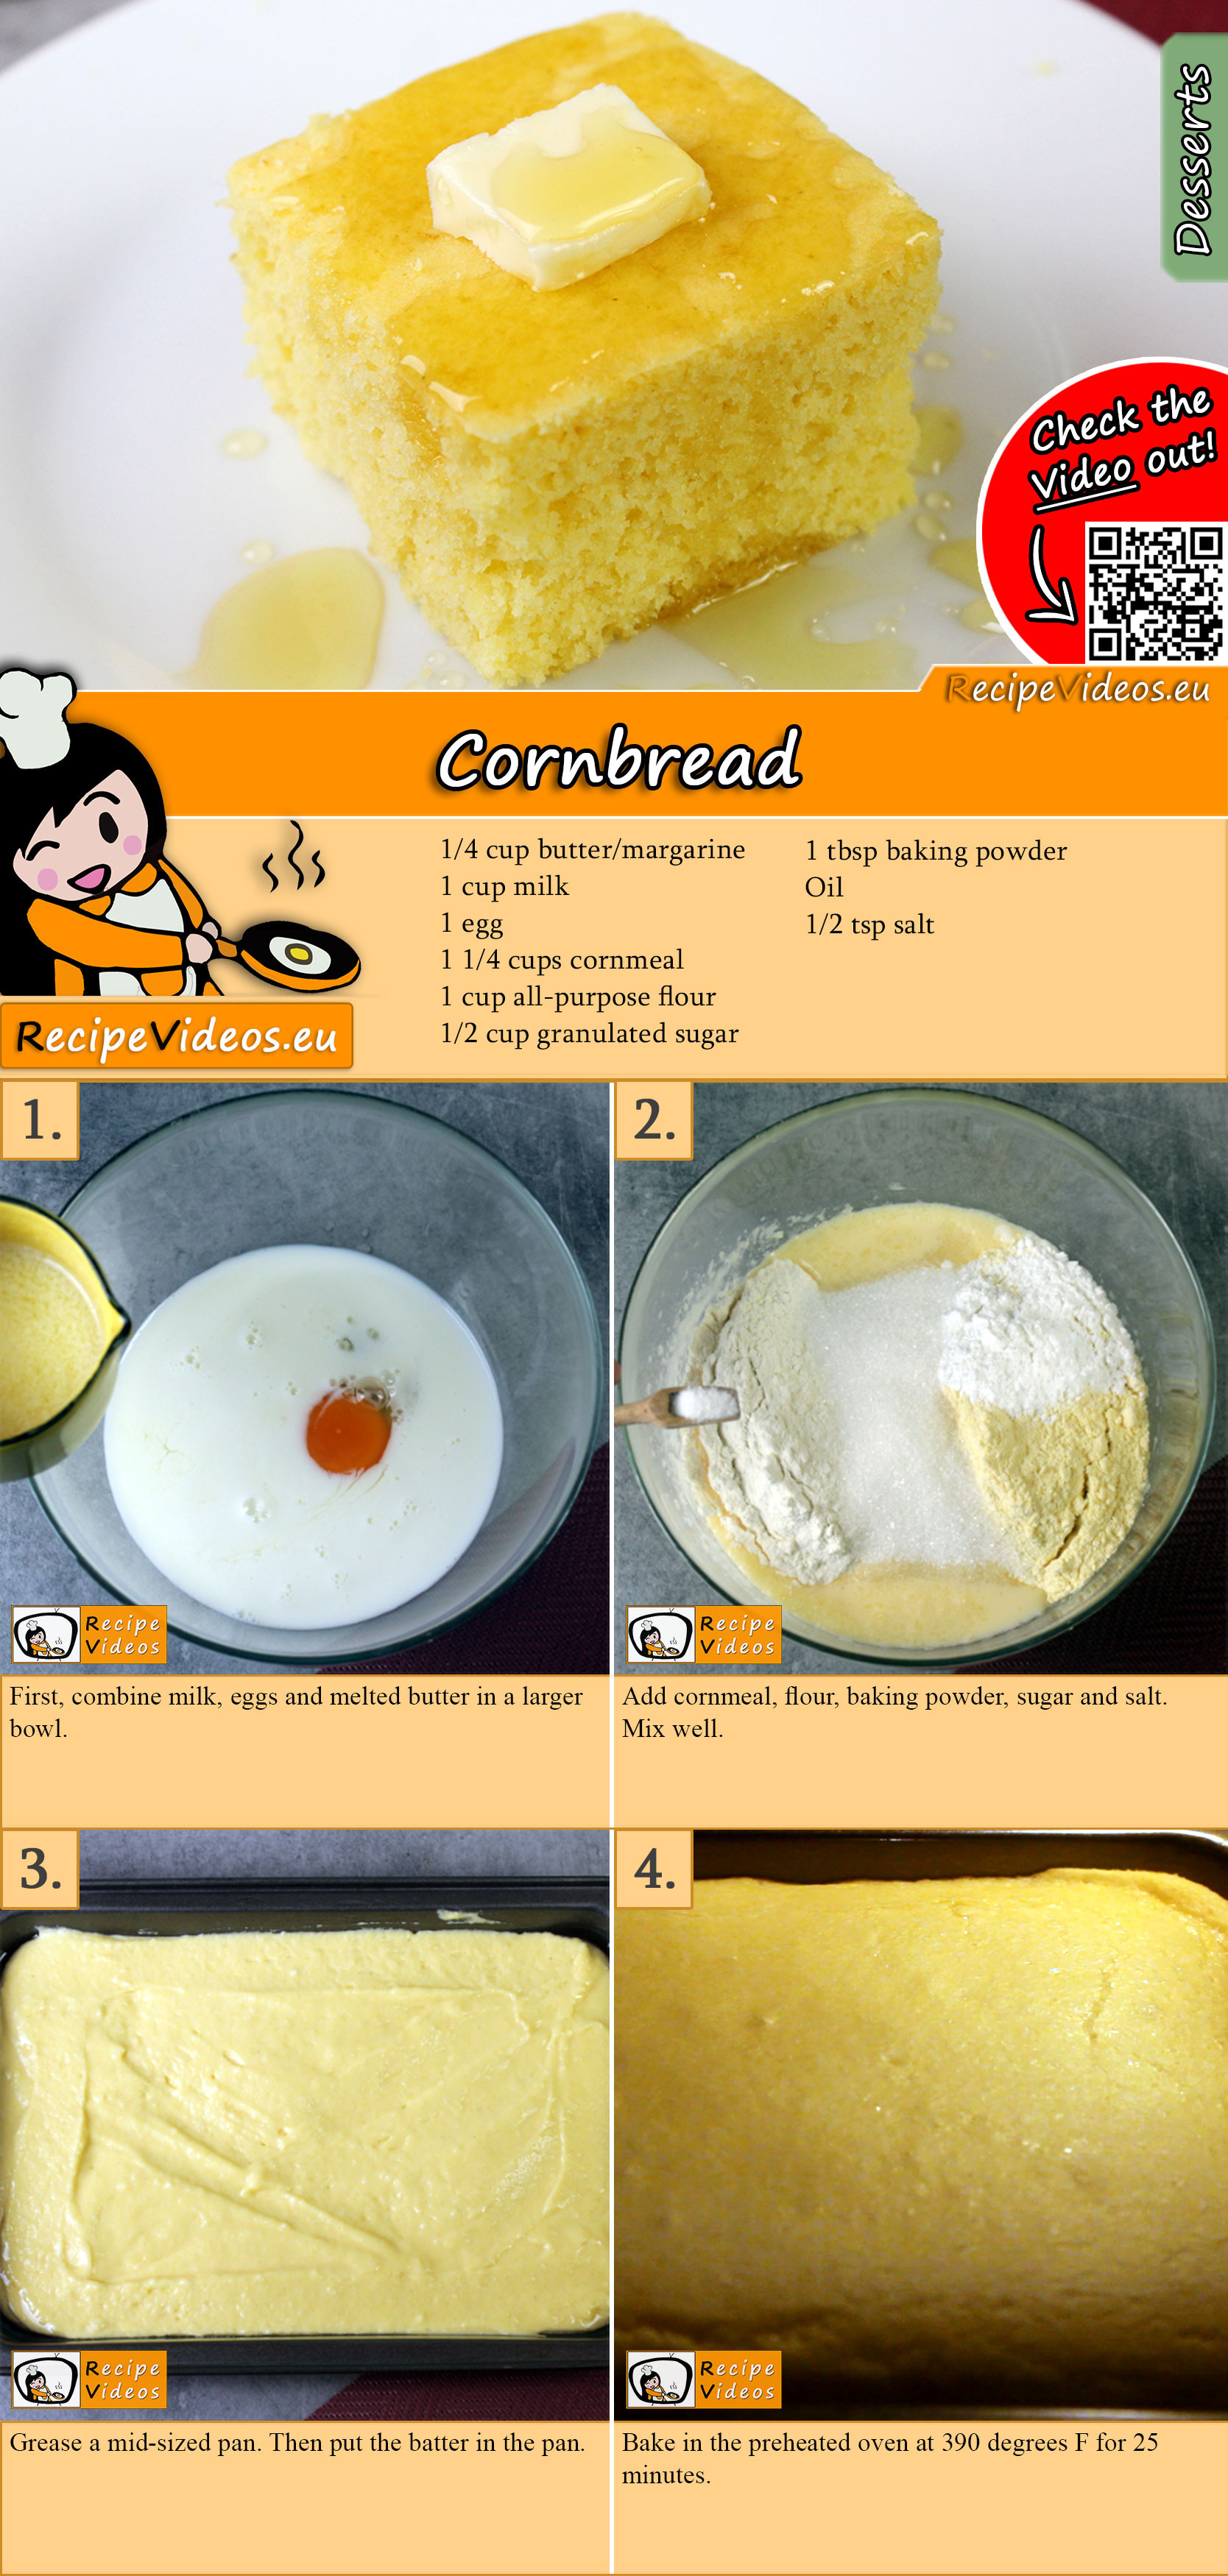 Cornbread recipe with video